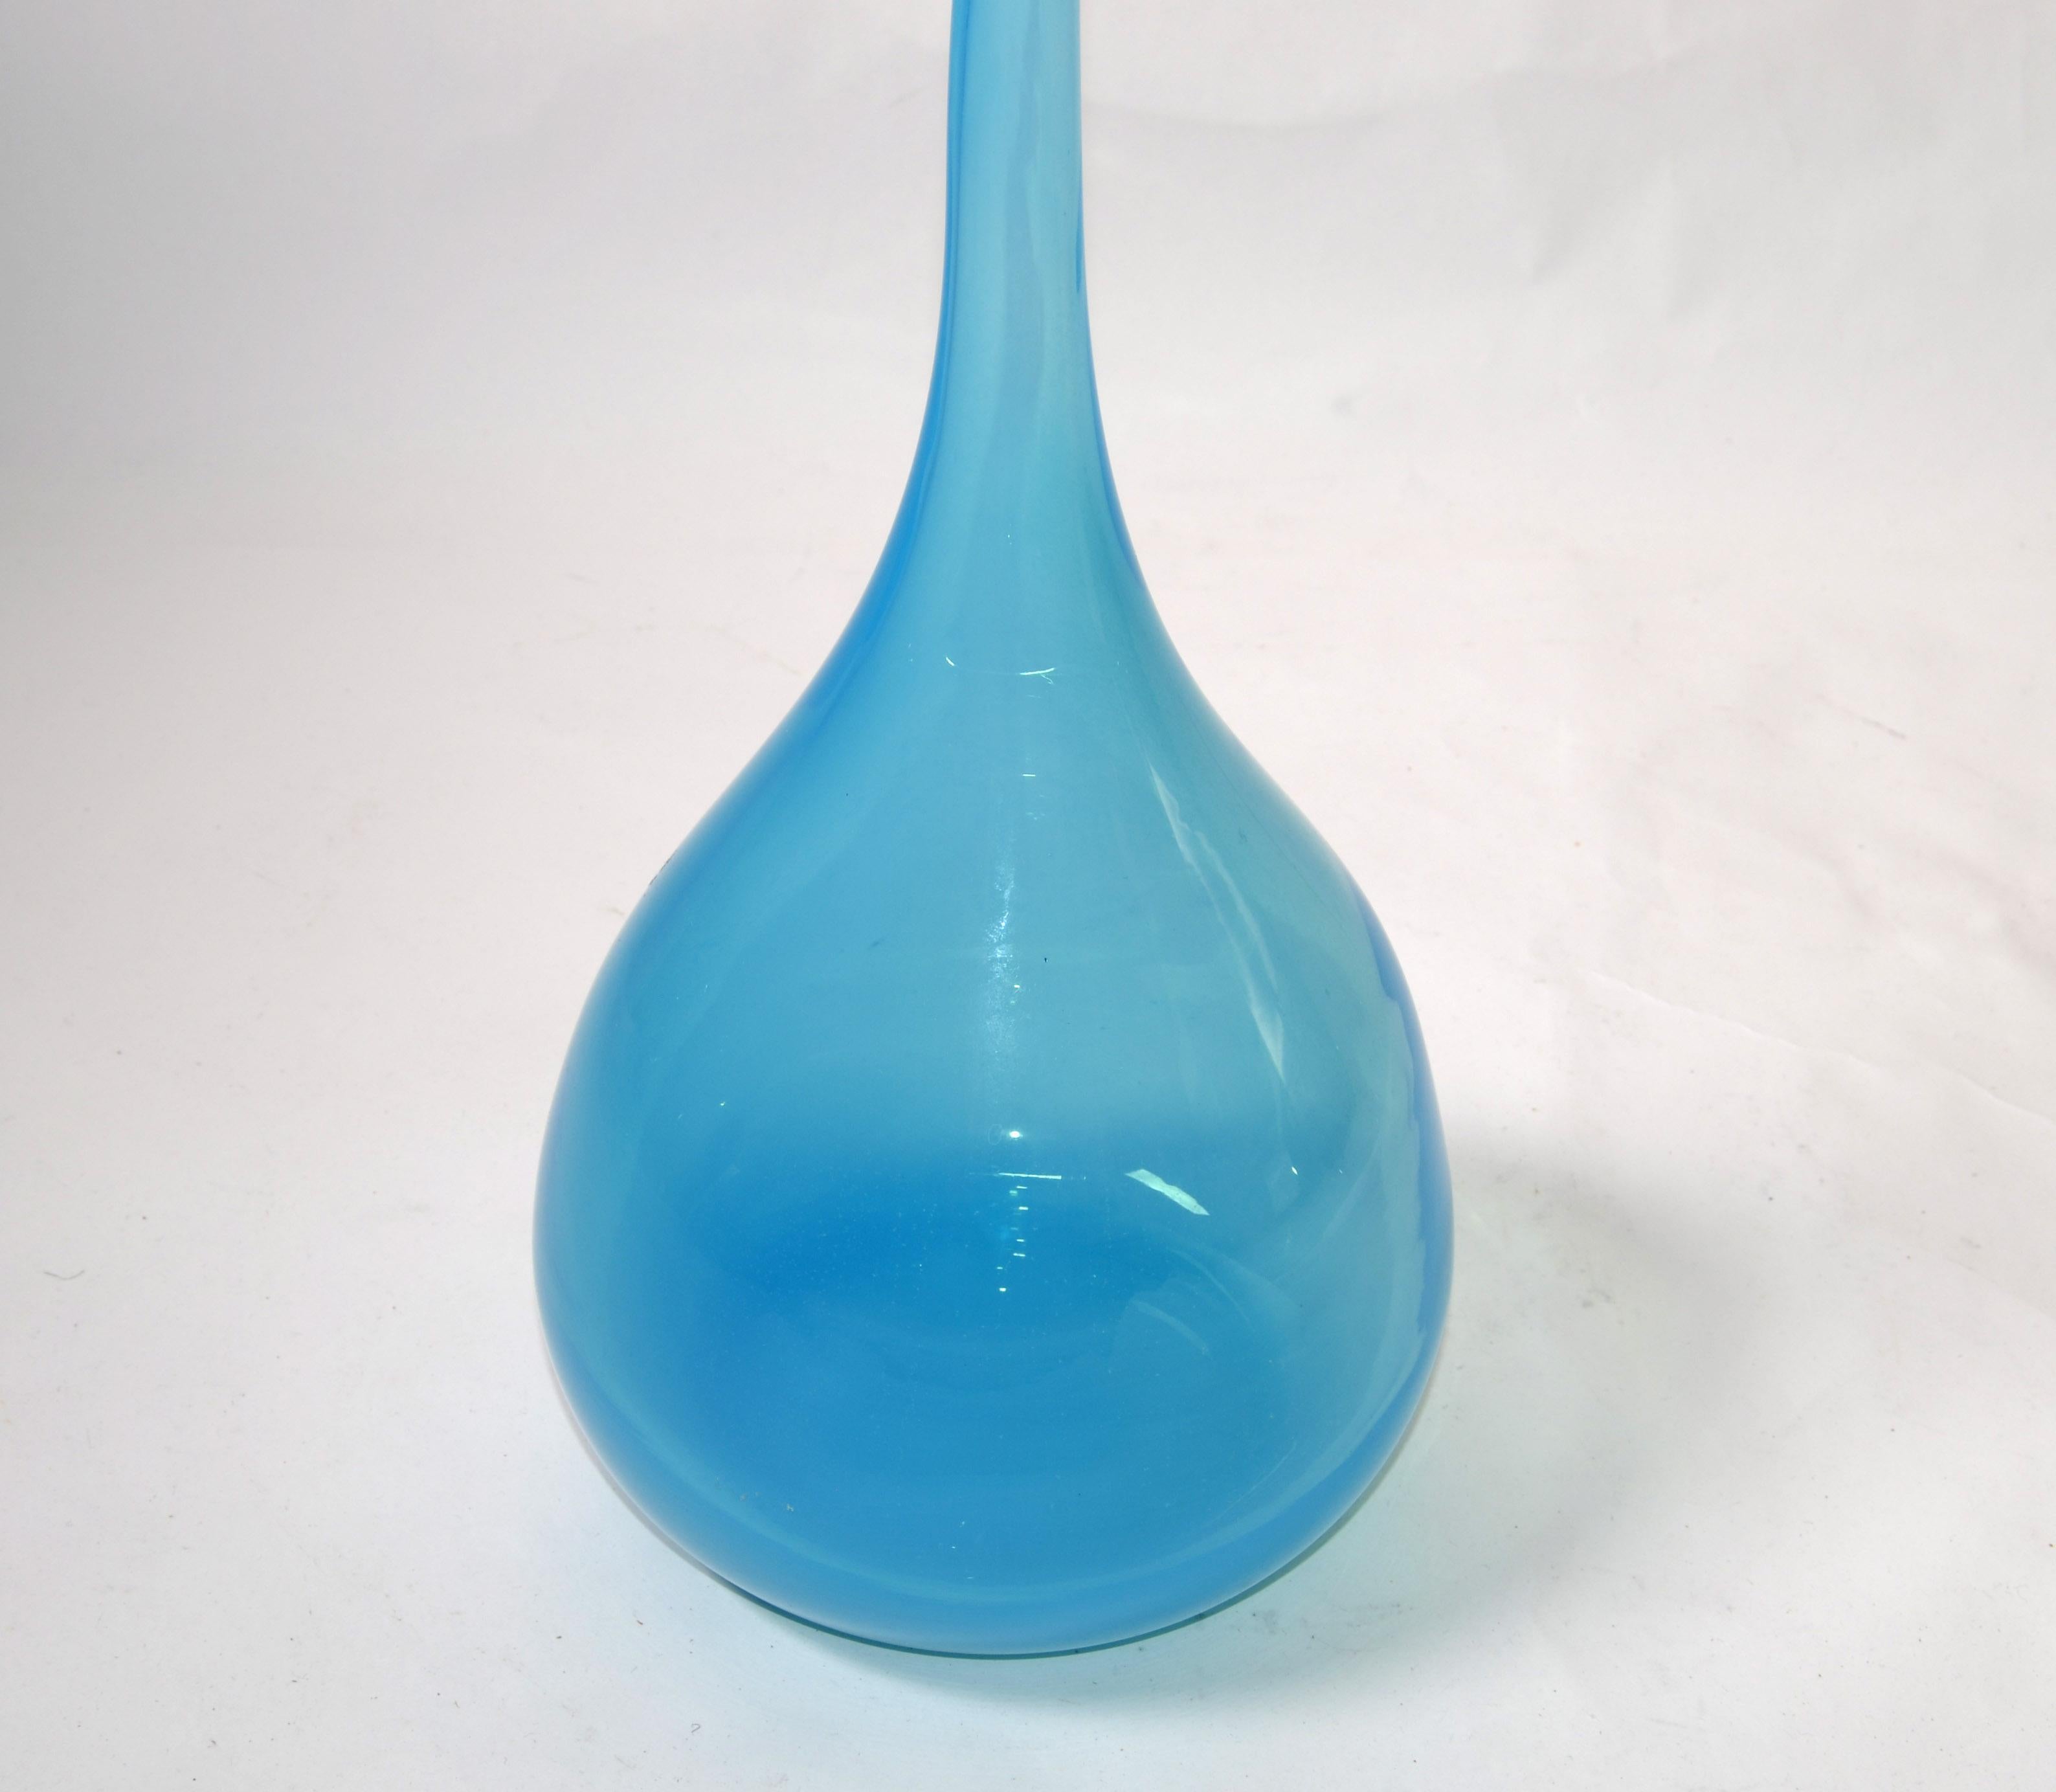 Kjell Engman Kosta Boda Style Blue Crystal Bud Art Vase Scandinavian Modern 1990 For Sale 1